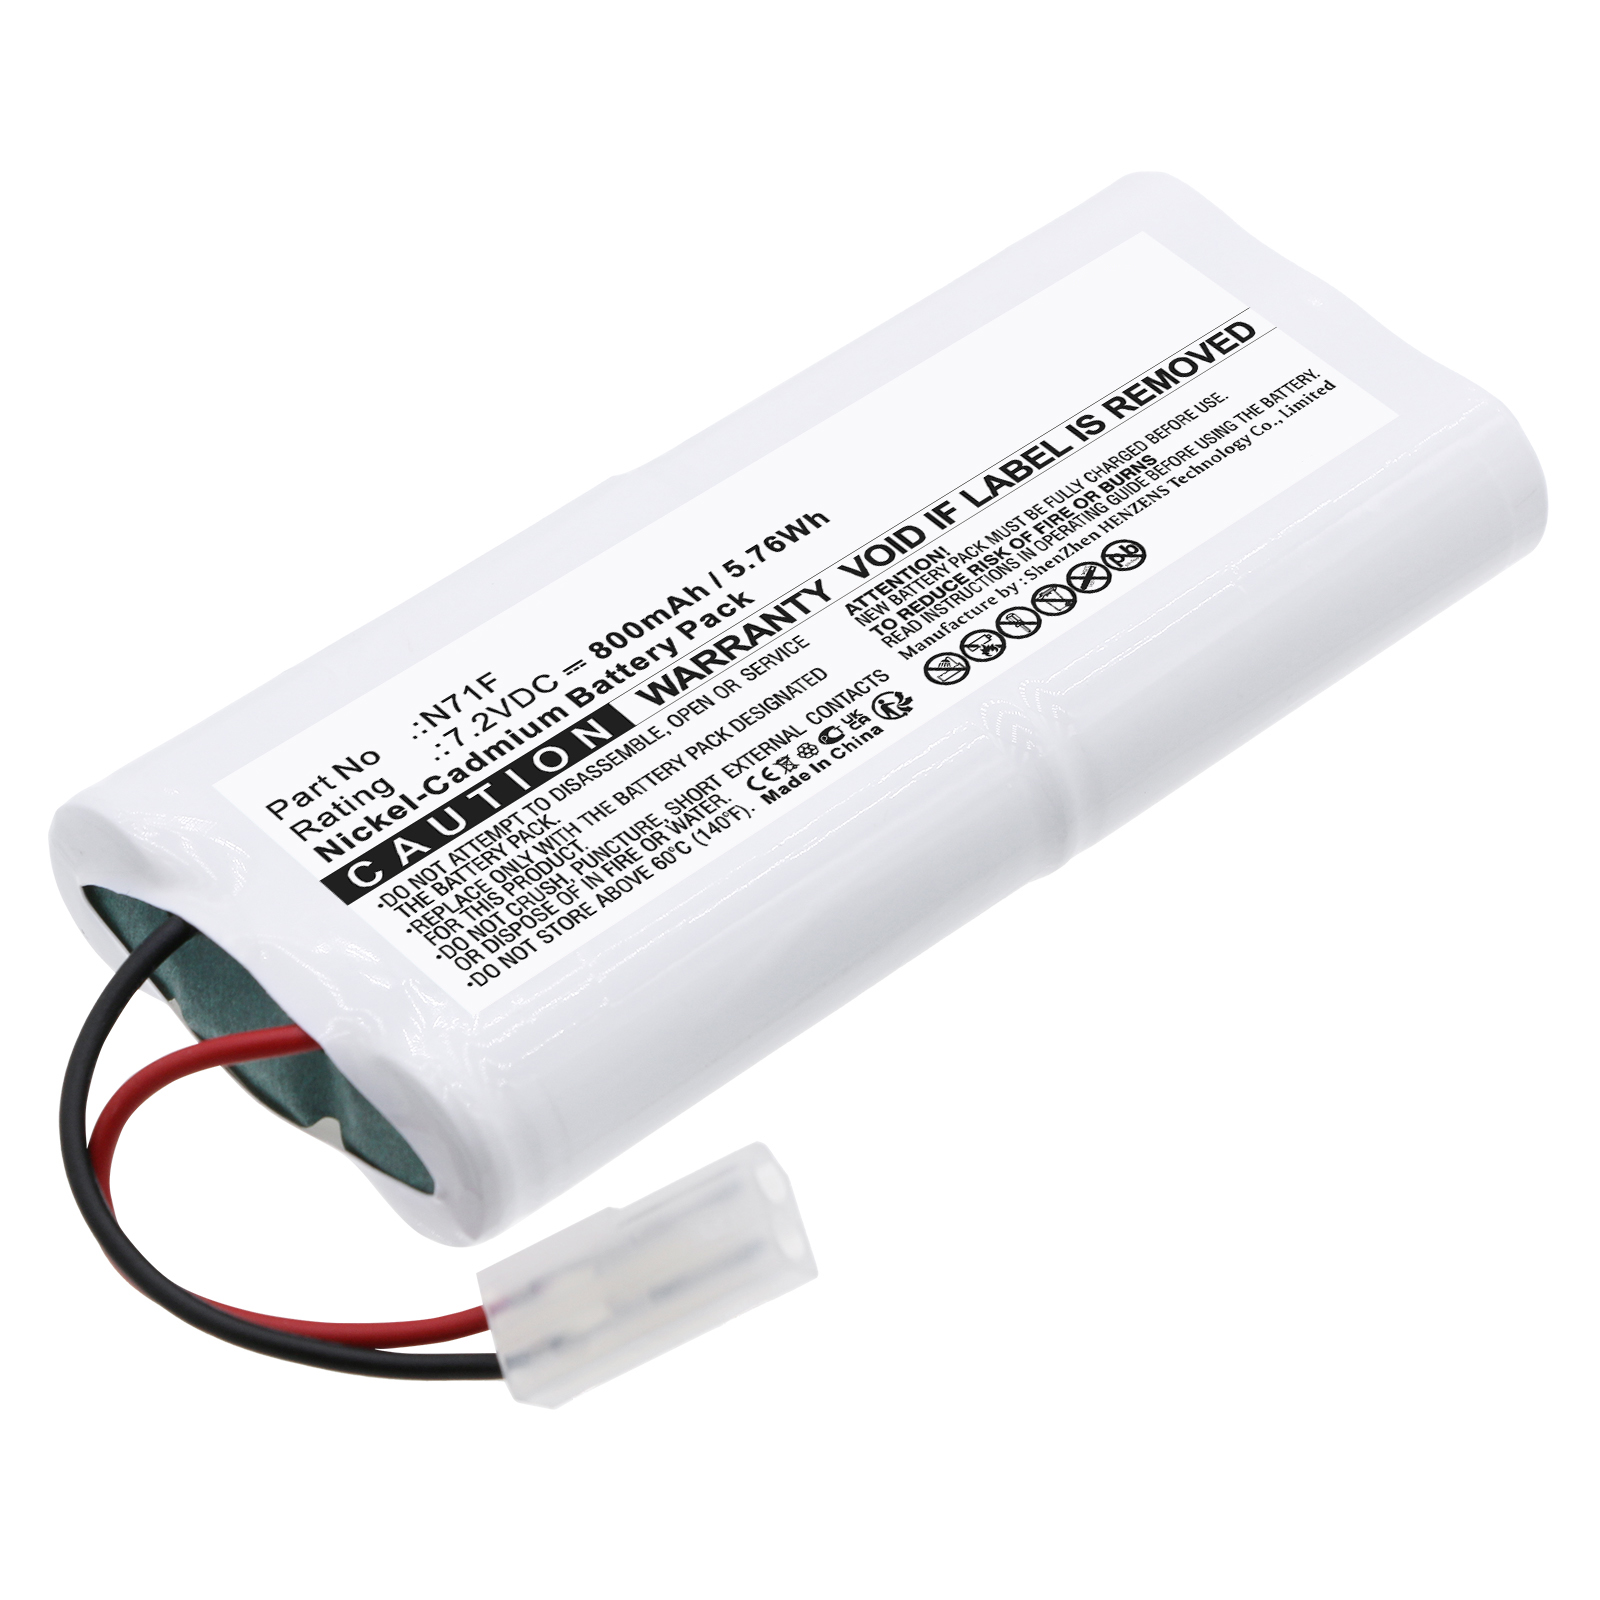 Synergy Digital Emergency Lighting Battery, Compatible with BIG BEAM 118-0017 Emergency Lighting Battery (Ni-CD, 7.2V, 800mAh)